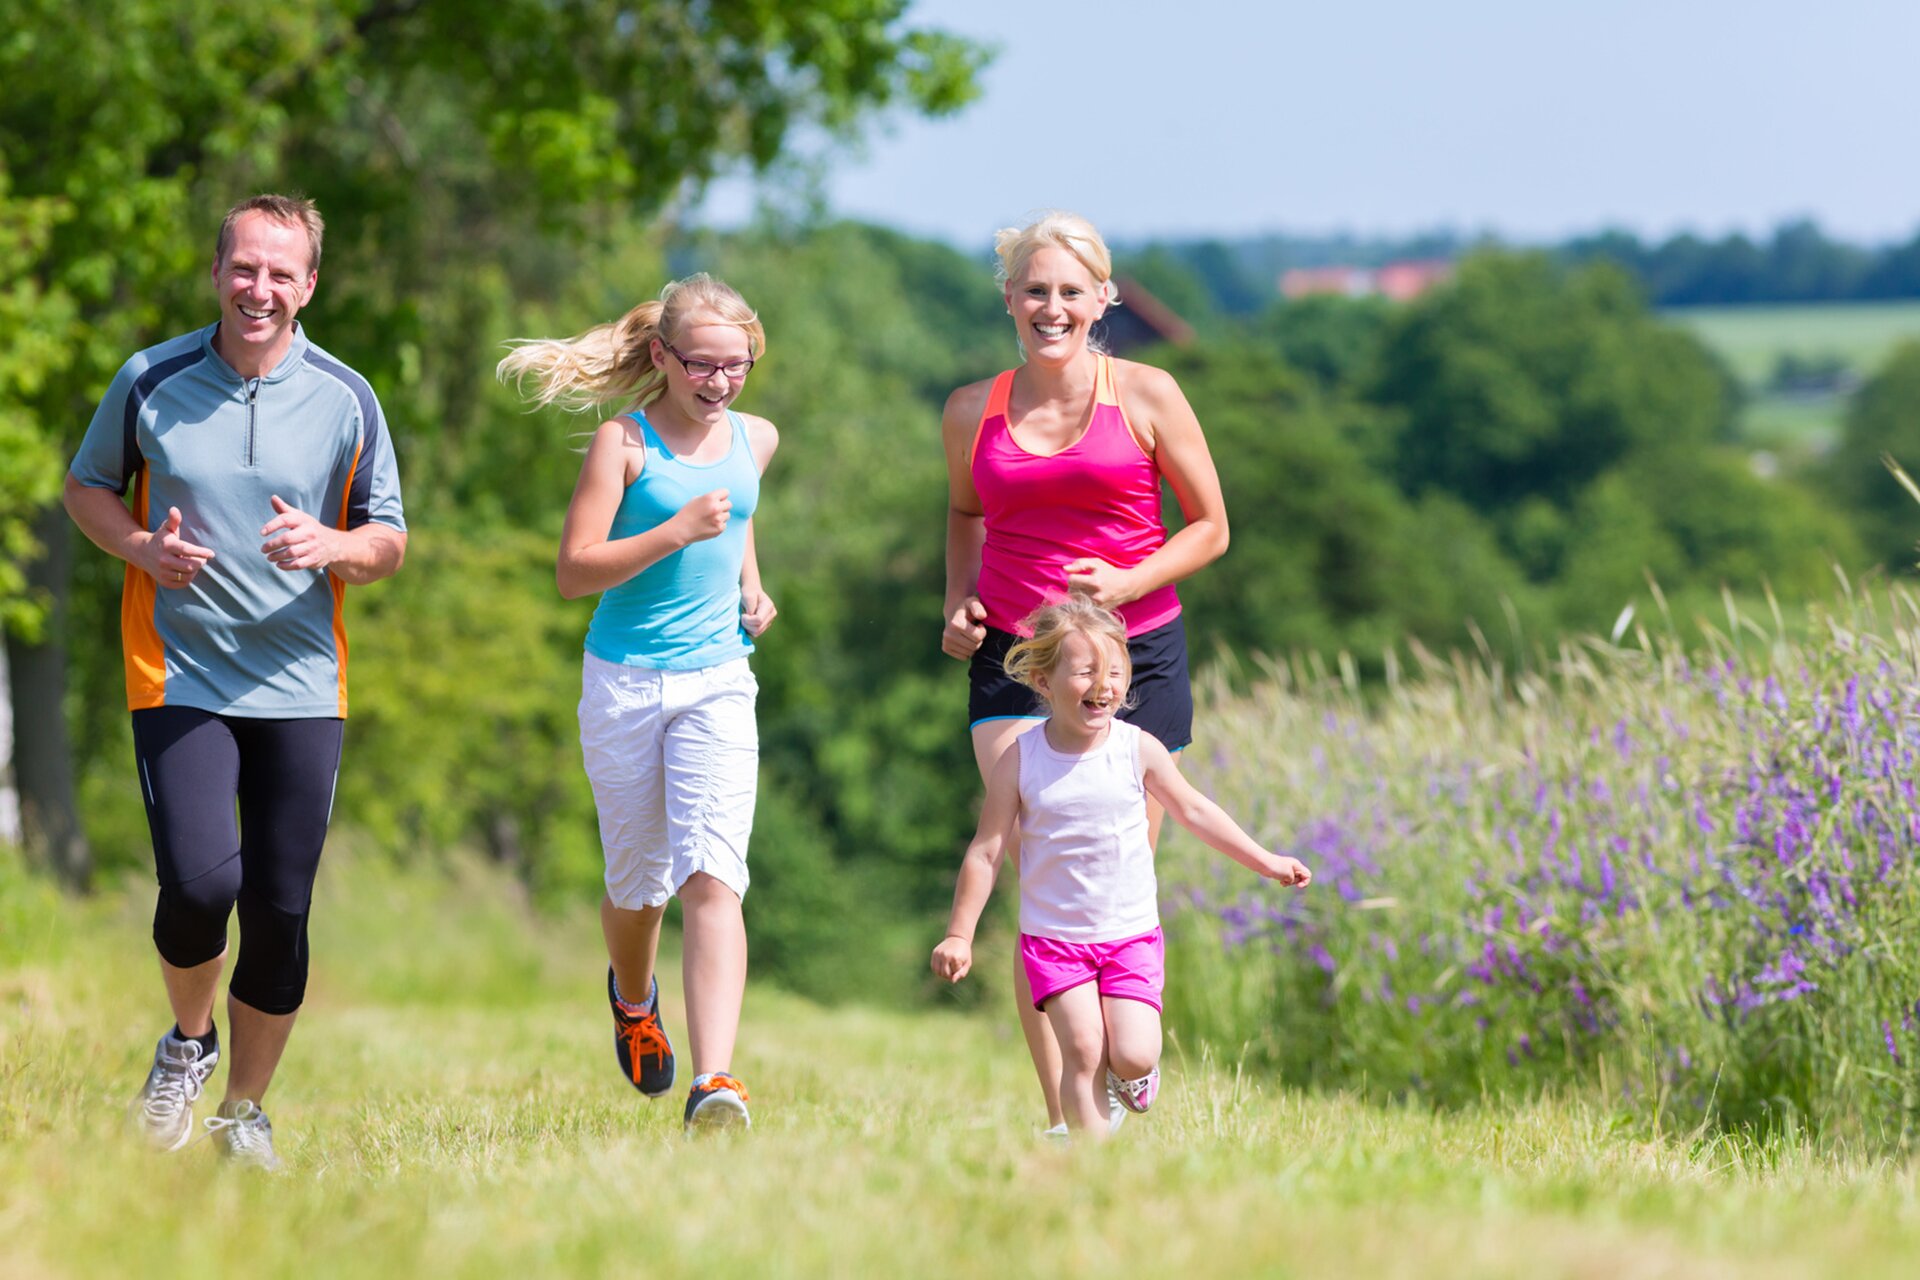 Rodzina uprawiająca biegi na świeżym powietrzu. Na fotografii widoczni biegnący rodzice, a pomiędzy nimi dwie dziewczynki, wysoka strasz i niska młodsza.